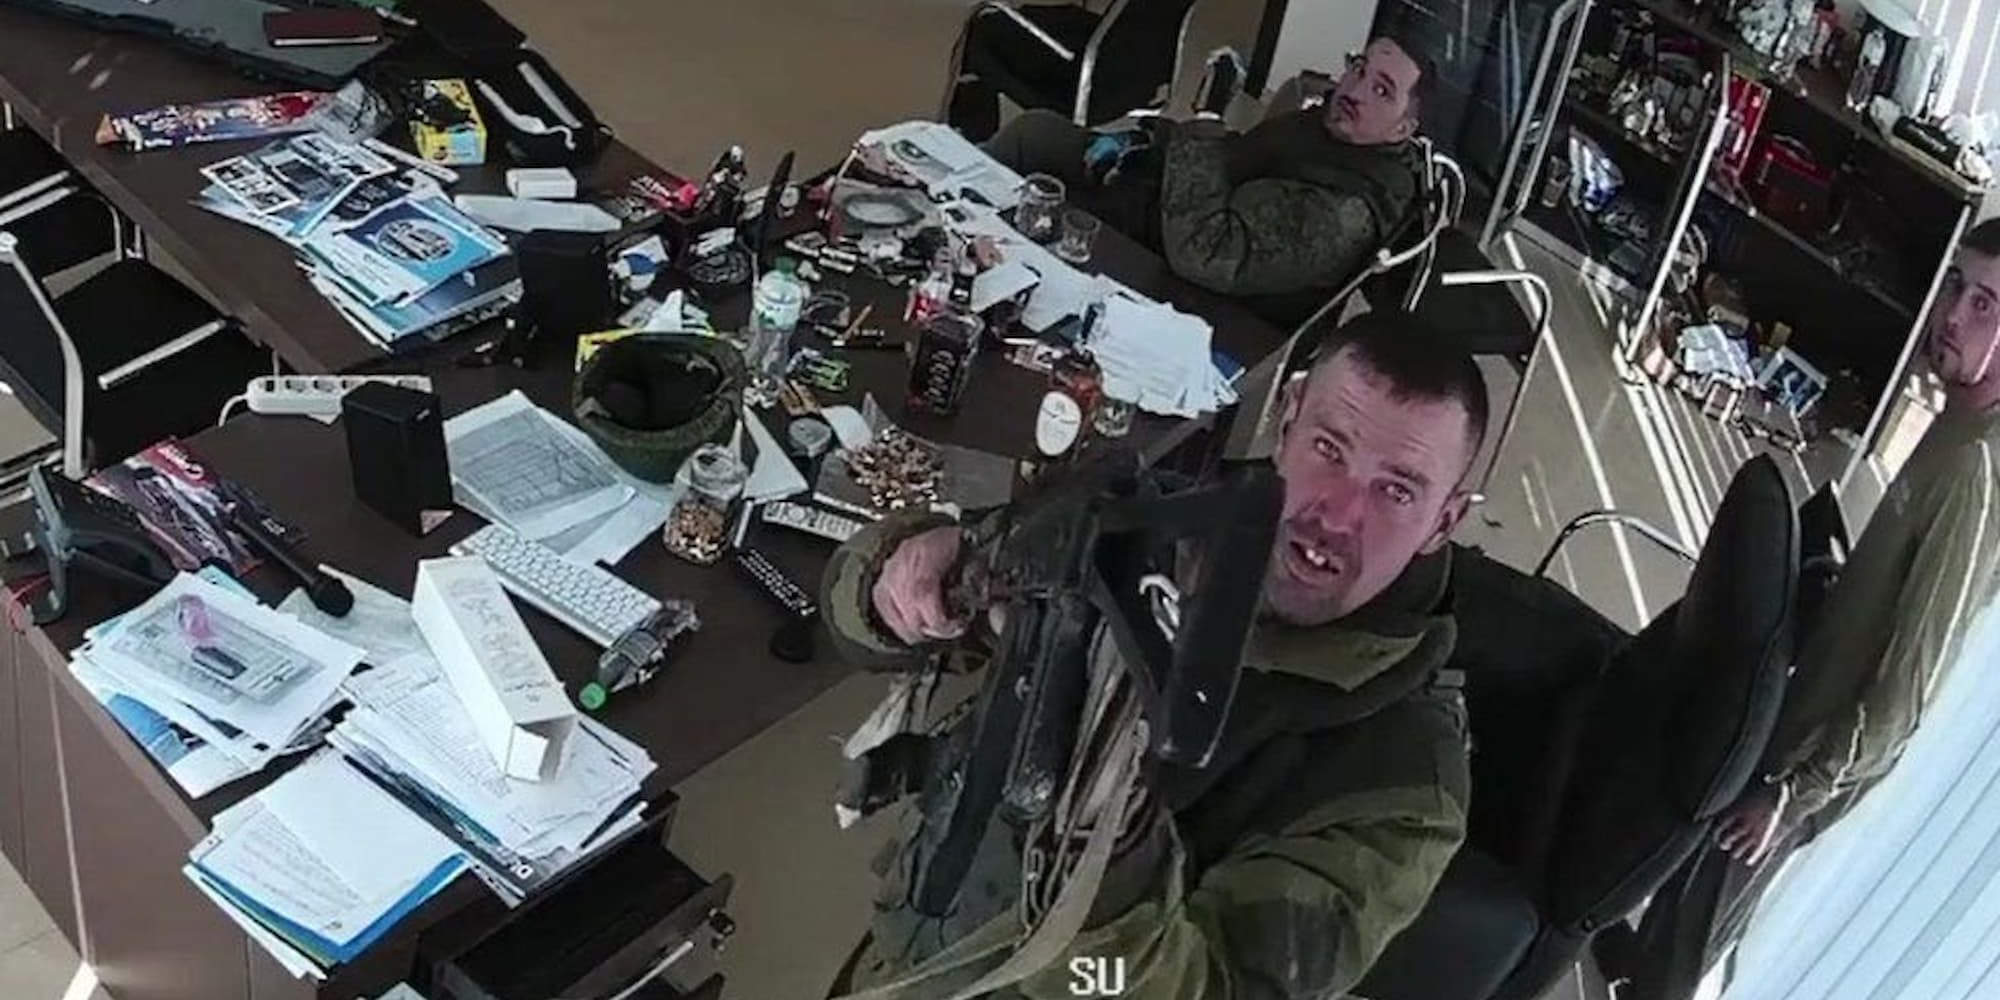 Ρώσοι στρατιώτες στην Ουκρανία